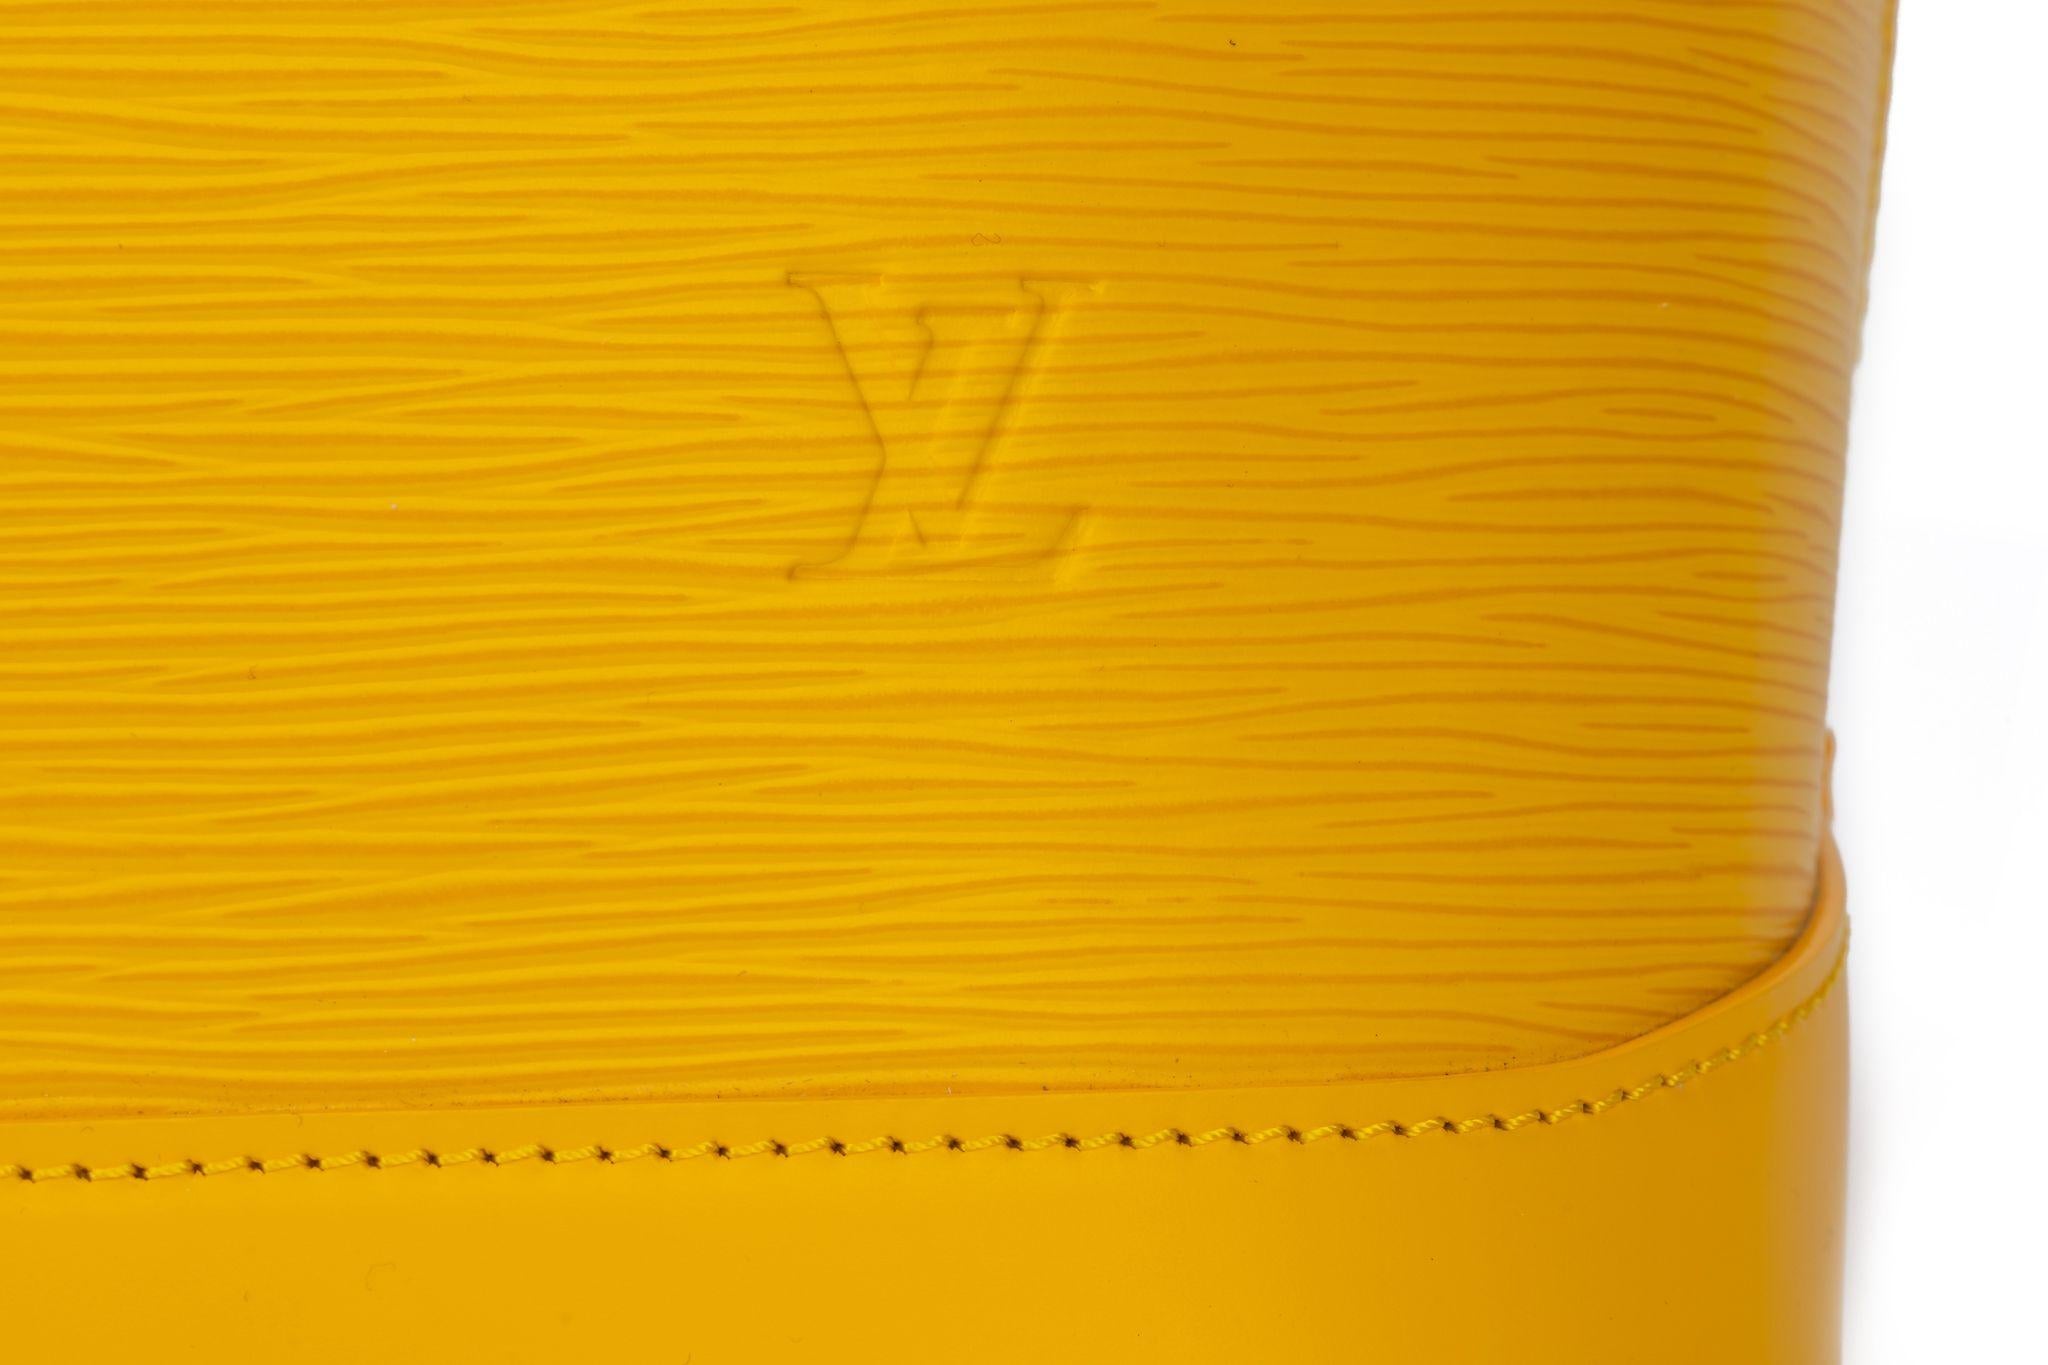 Vuitton XxL Alma Handbag Yellow Epi Leather For Sale 6